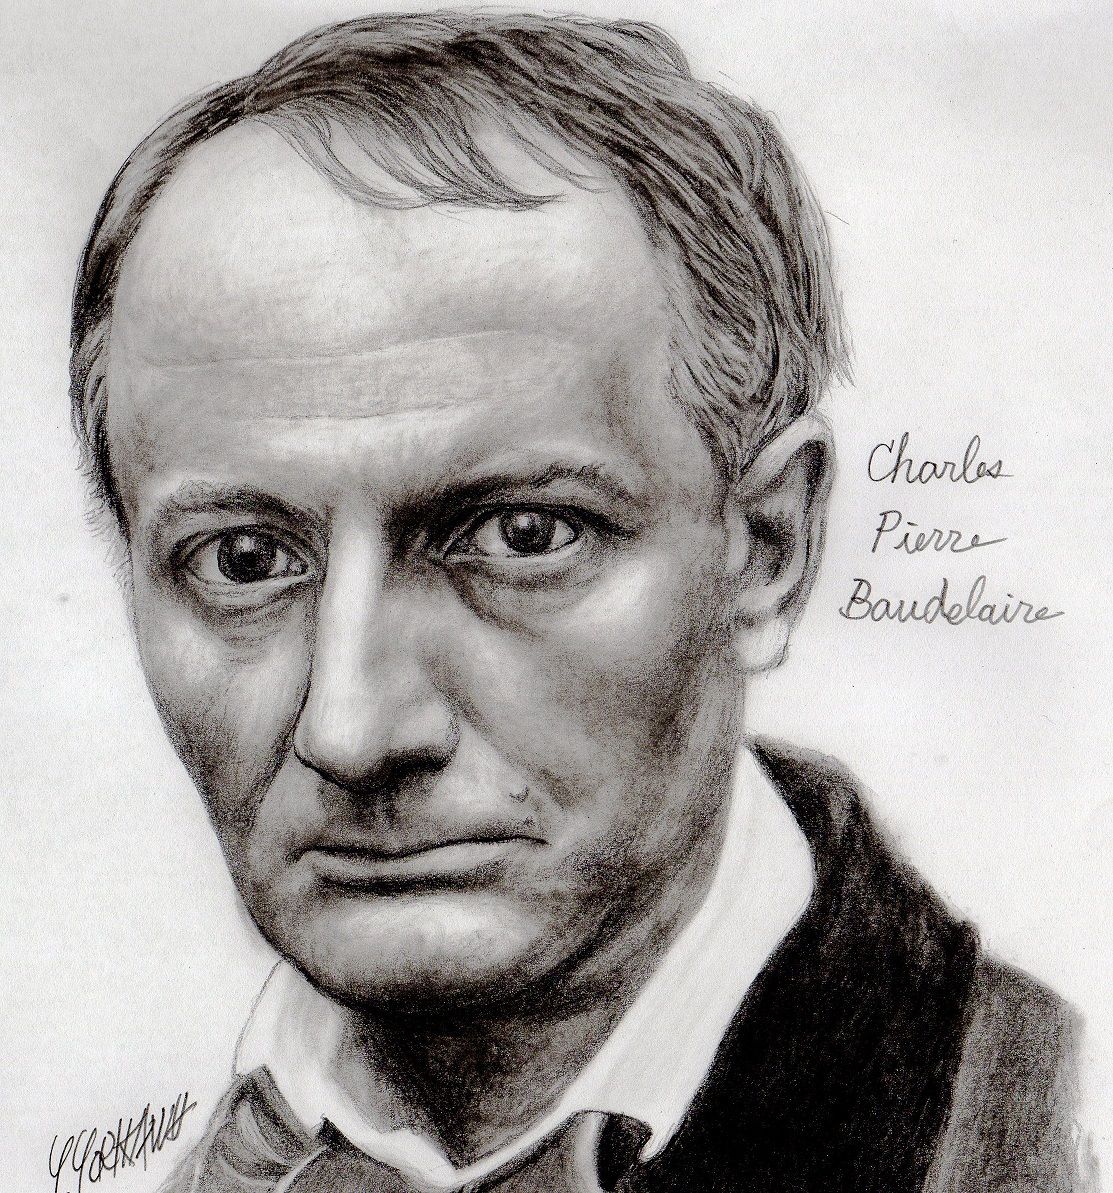 Charles Pierre Baudelaire シャルル ピエール ボードレール記事タイトル ネット絵師 独言の鉛筆画